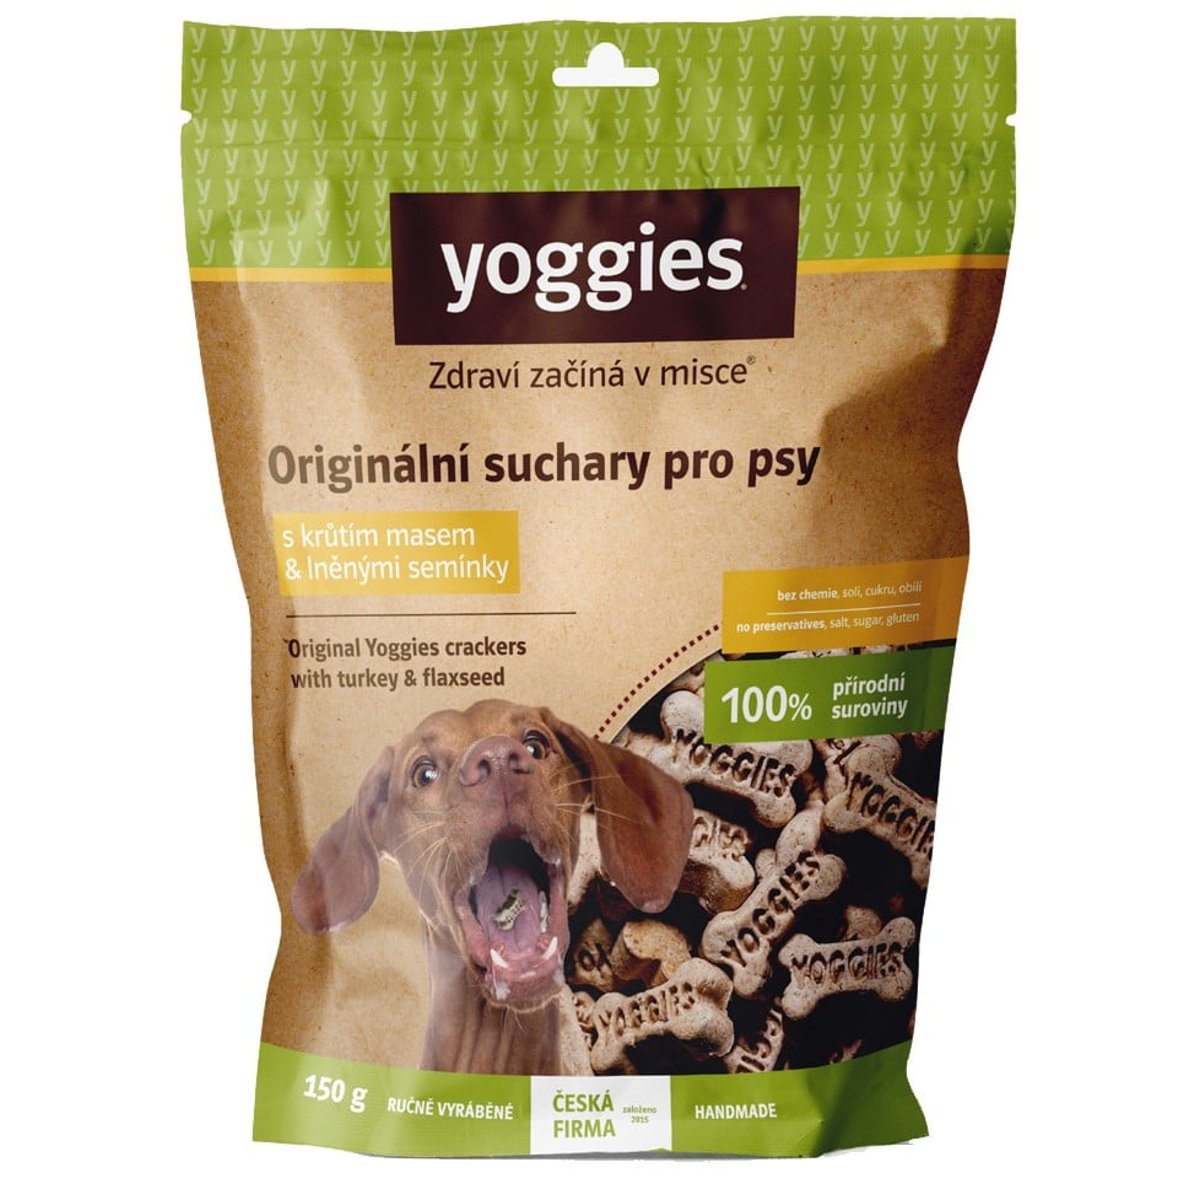 Yoggies Originální suchary pro psy s krůtím masem & lněnými semínky